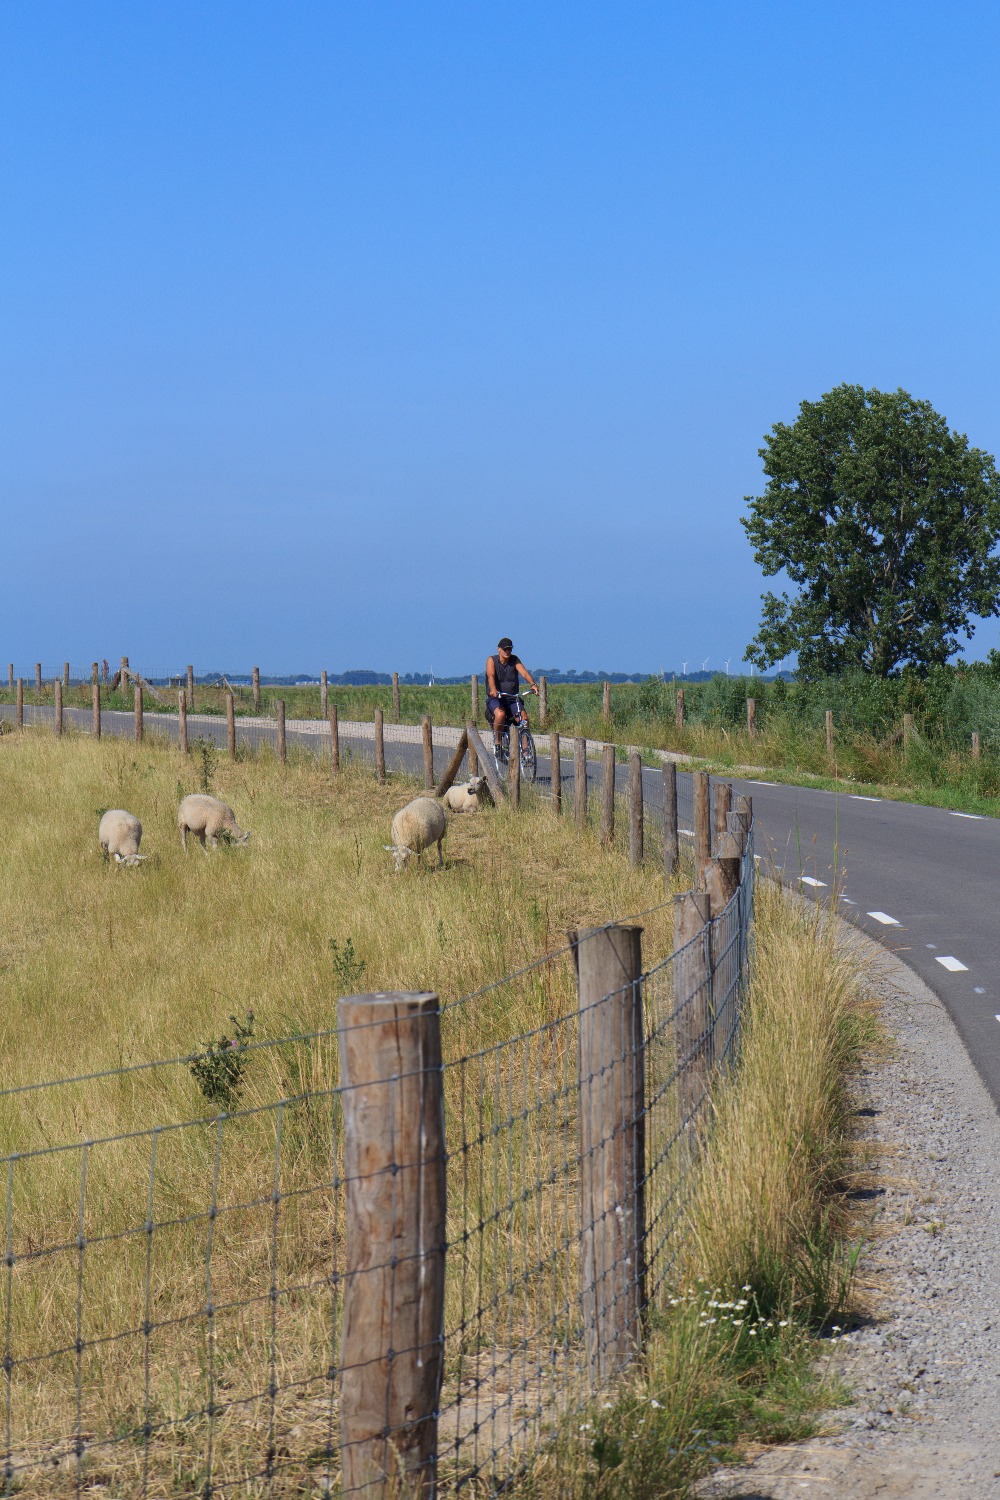 Familienurlaub in den Niederlanden - Cycling quiet roads | Bild: Boat Bike Tours